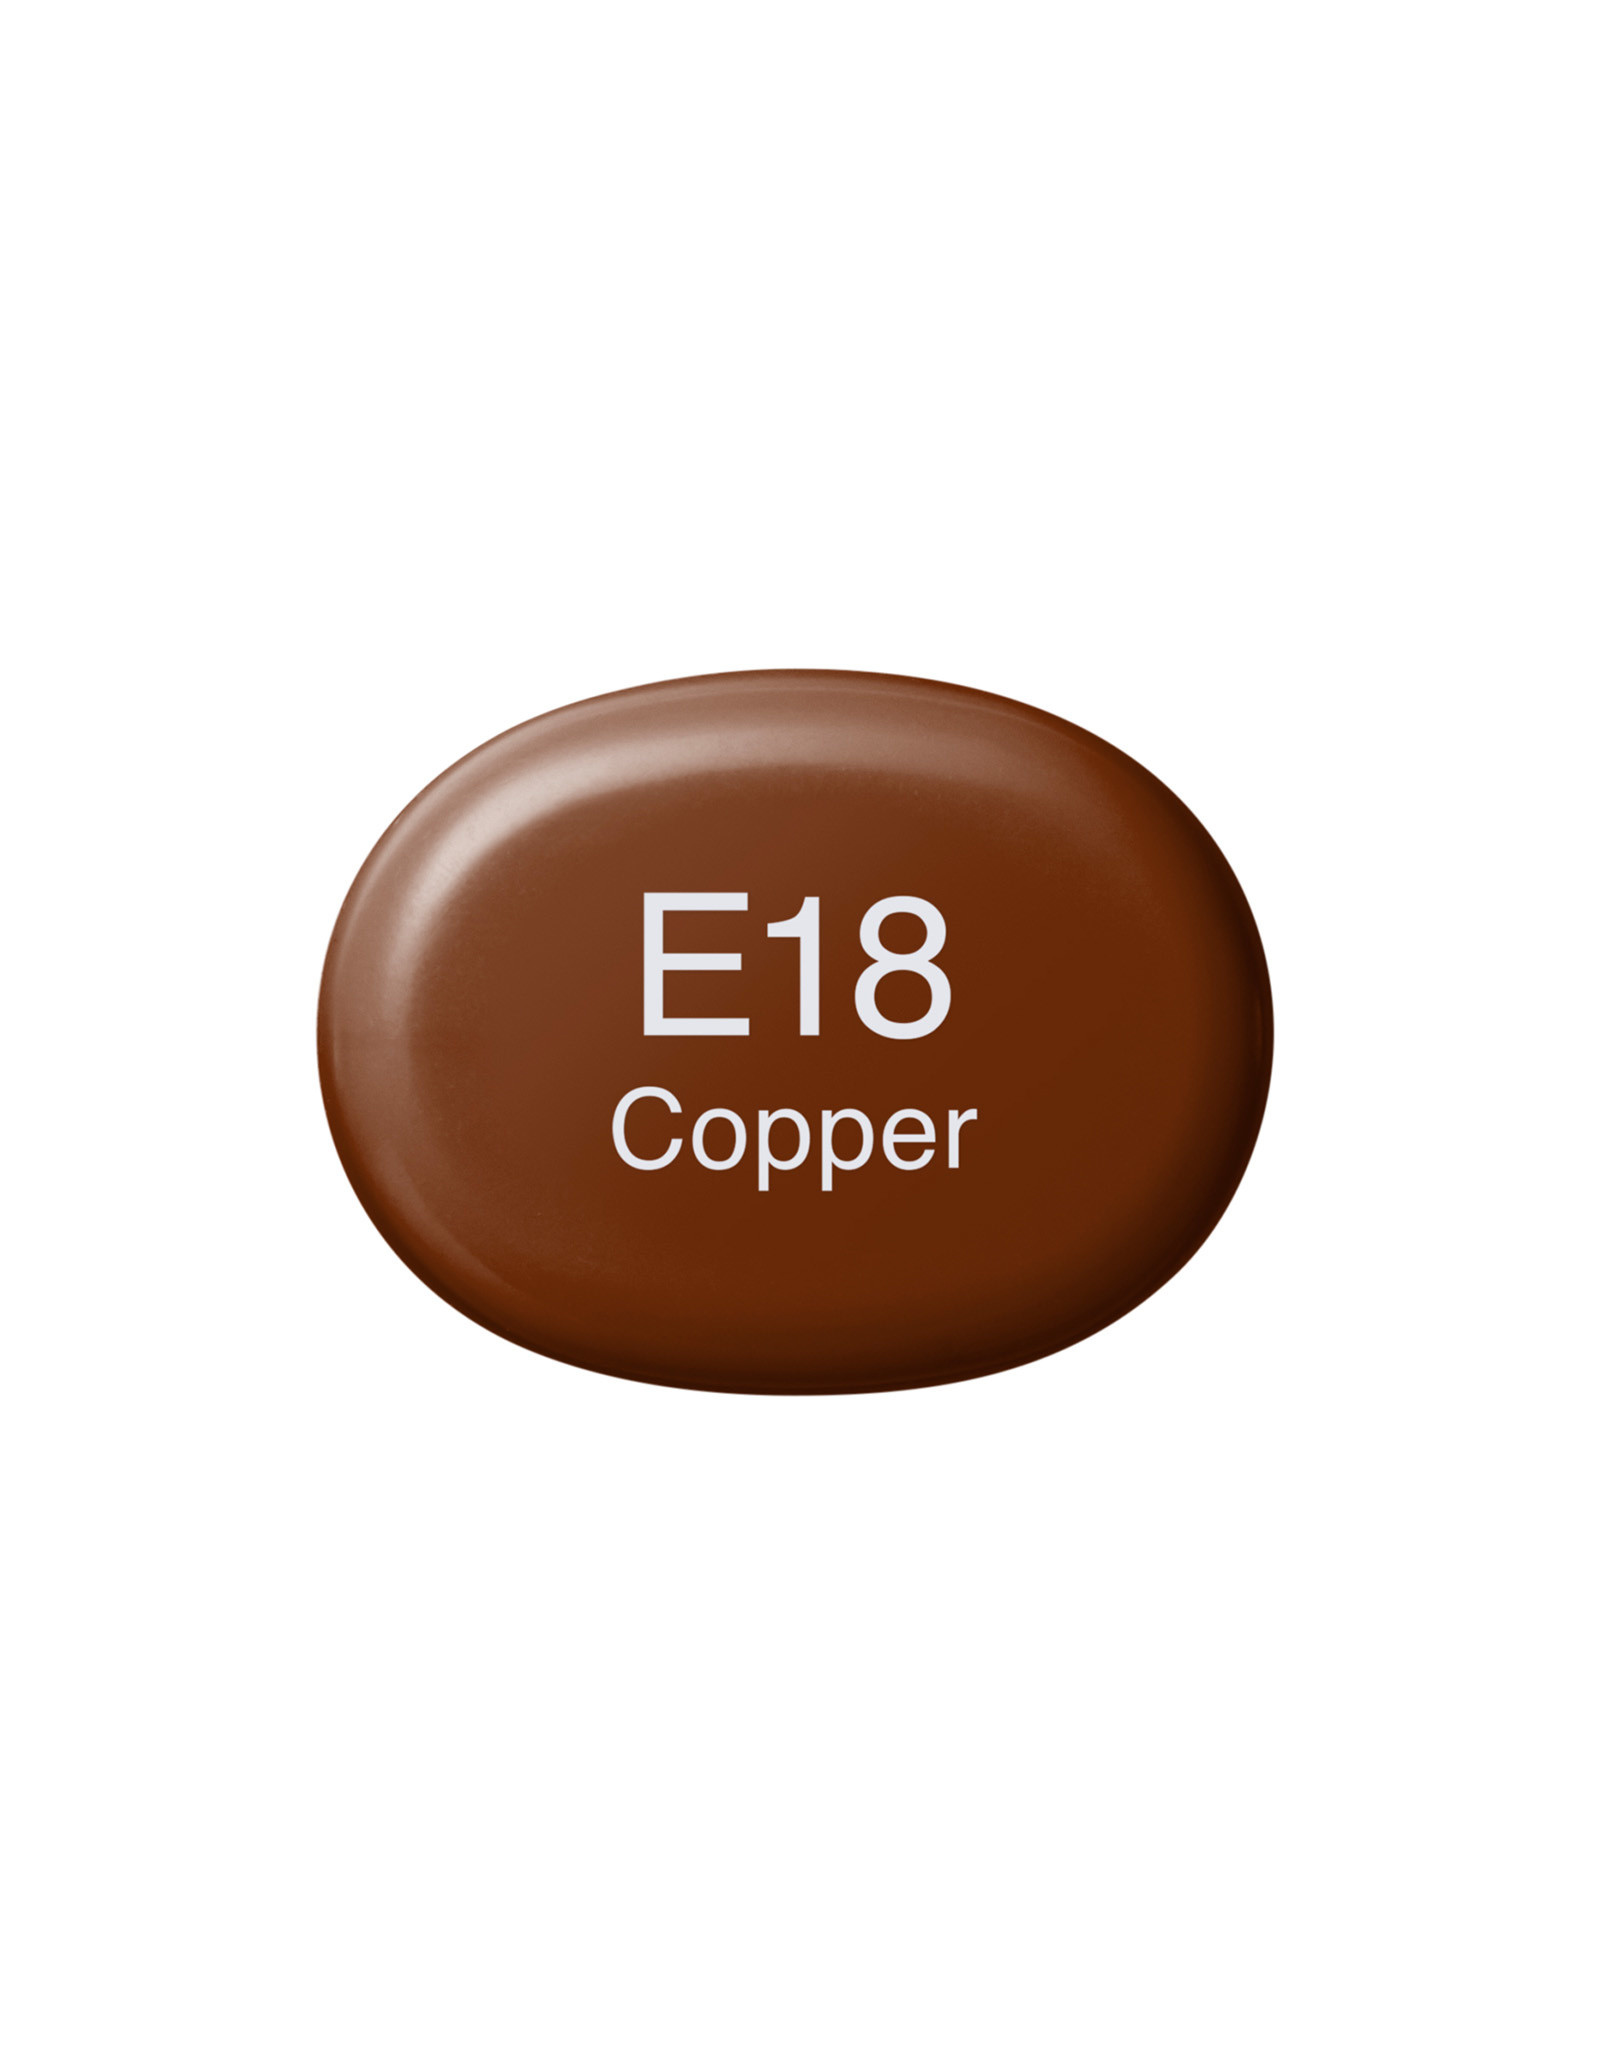 COPIC COPIC Sketch Marker E18 Copper